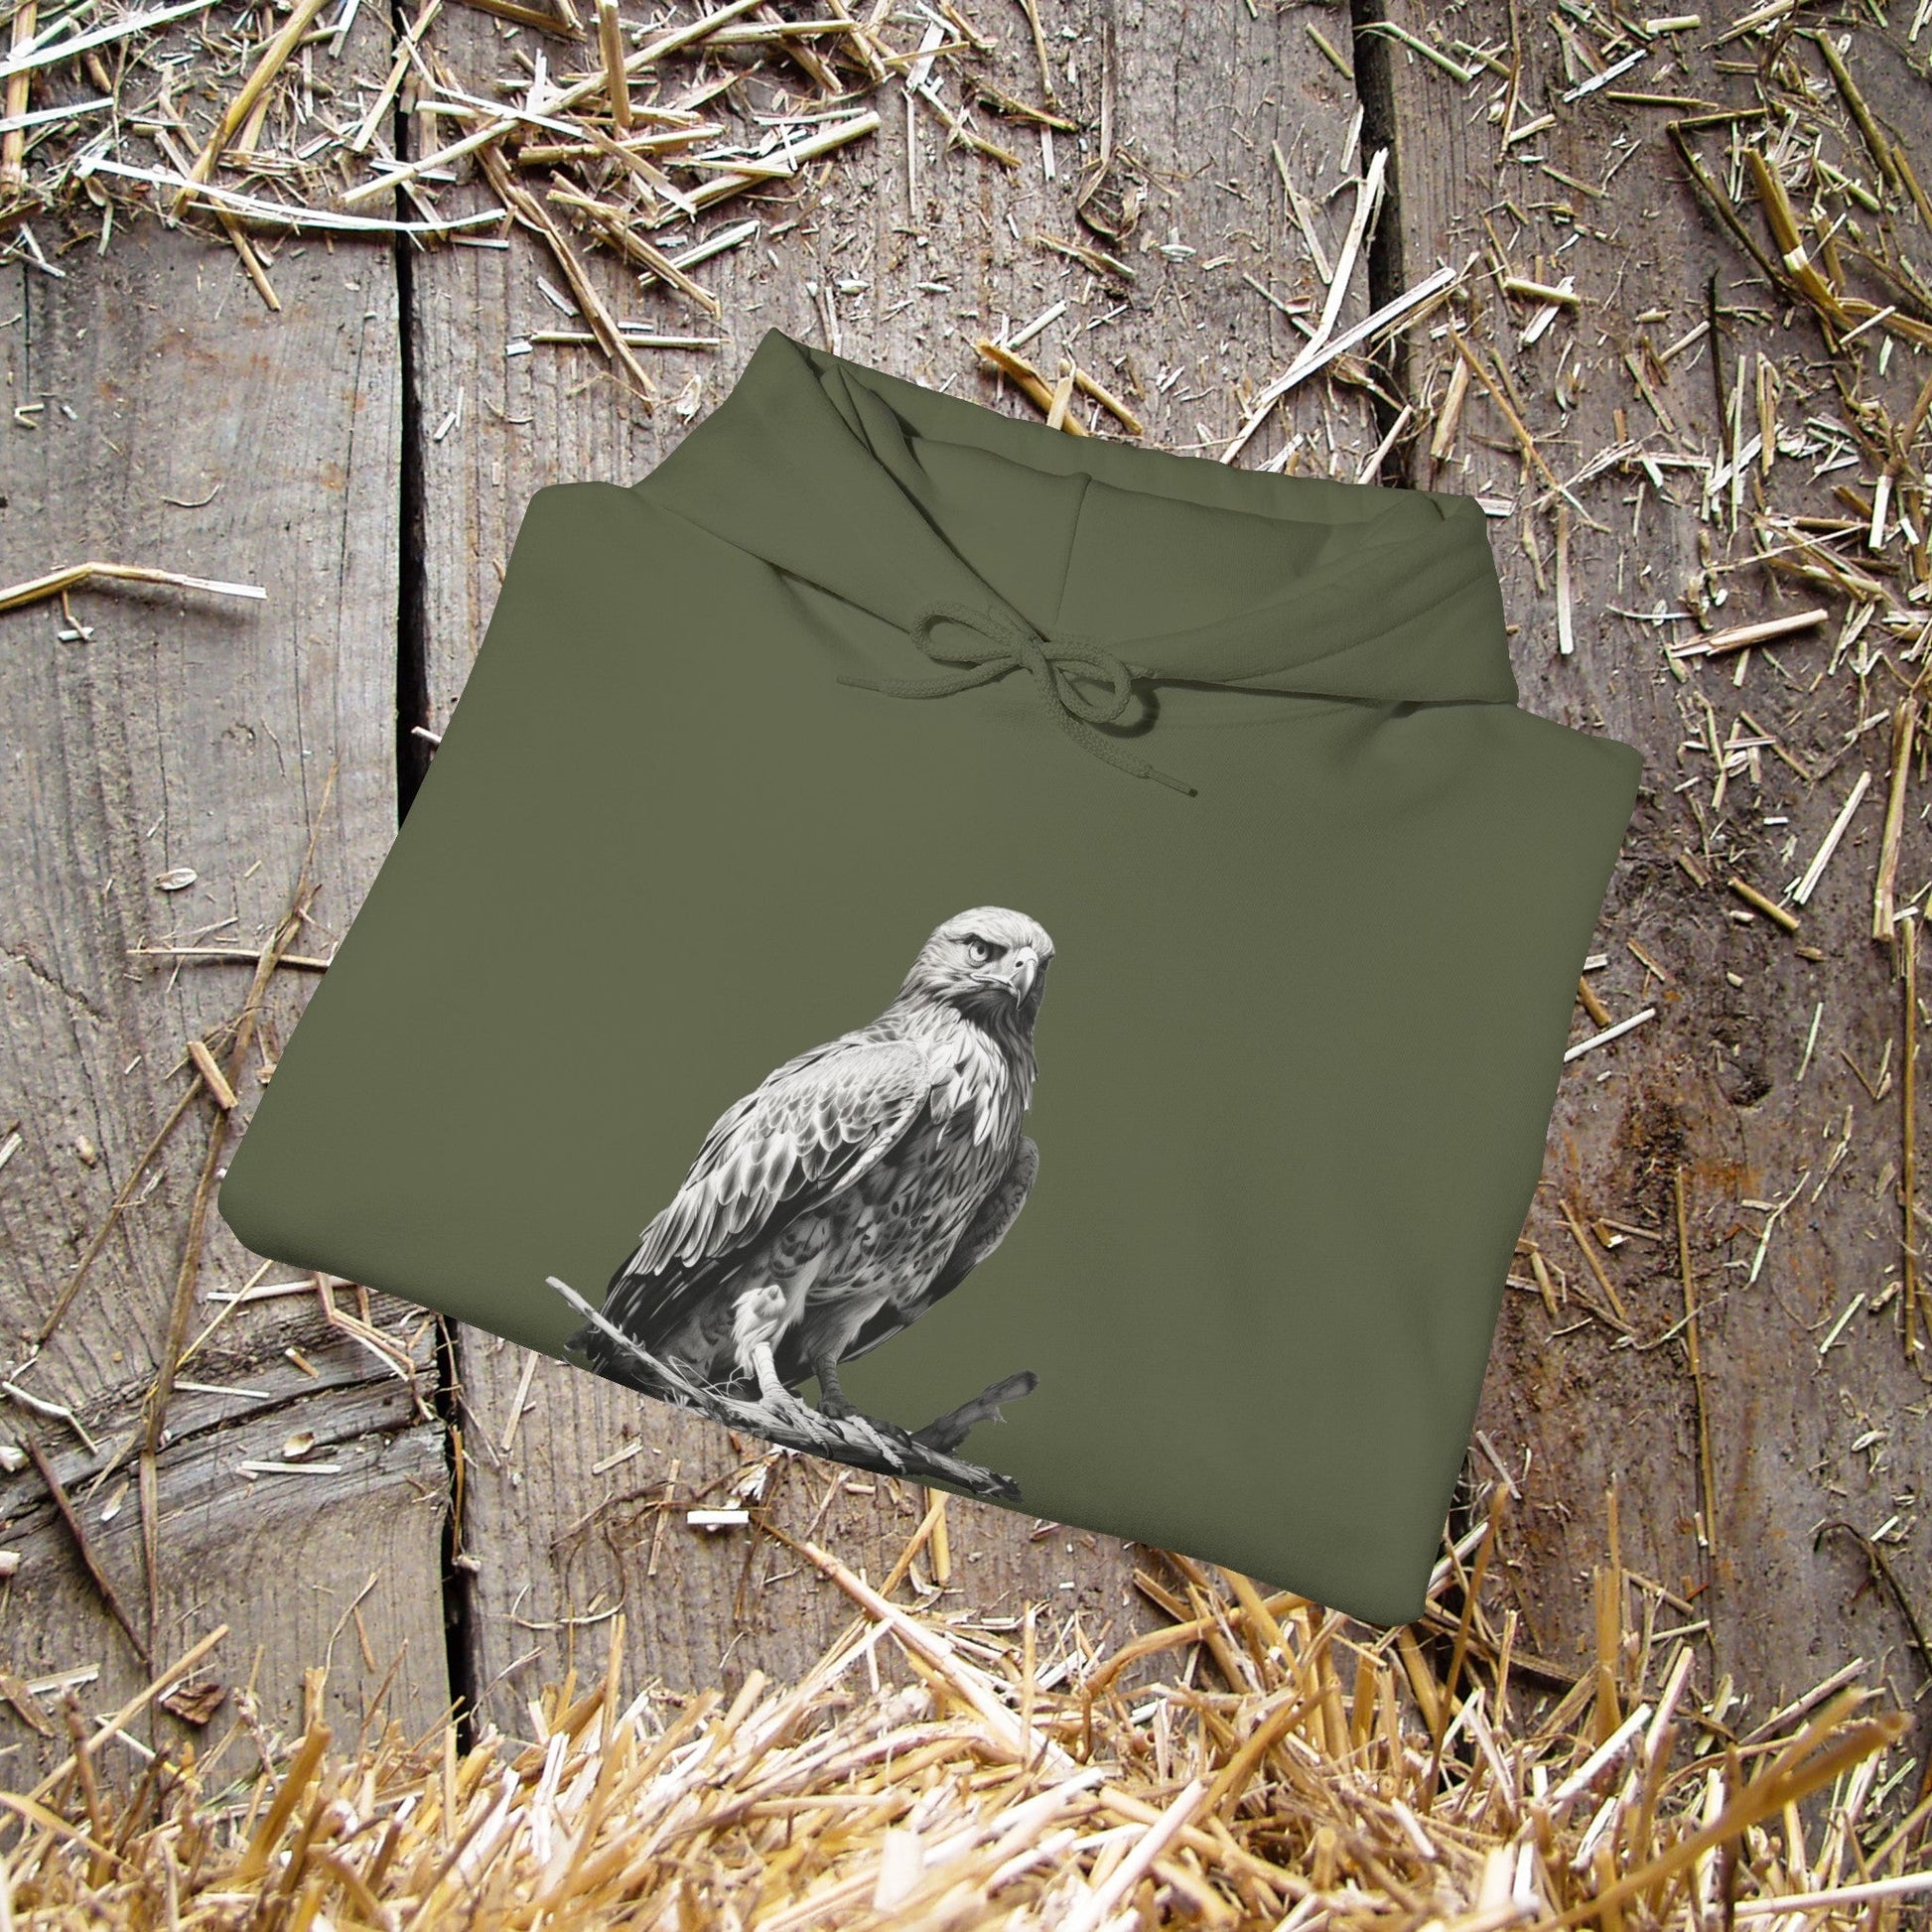 Bird Wildlife Hoodie, Red Tail Hawk Artwork on Sweatershirt - FlooredByArt